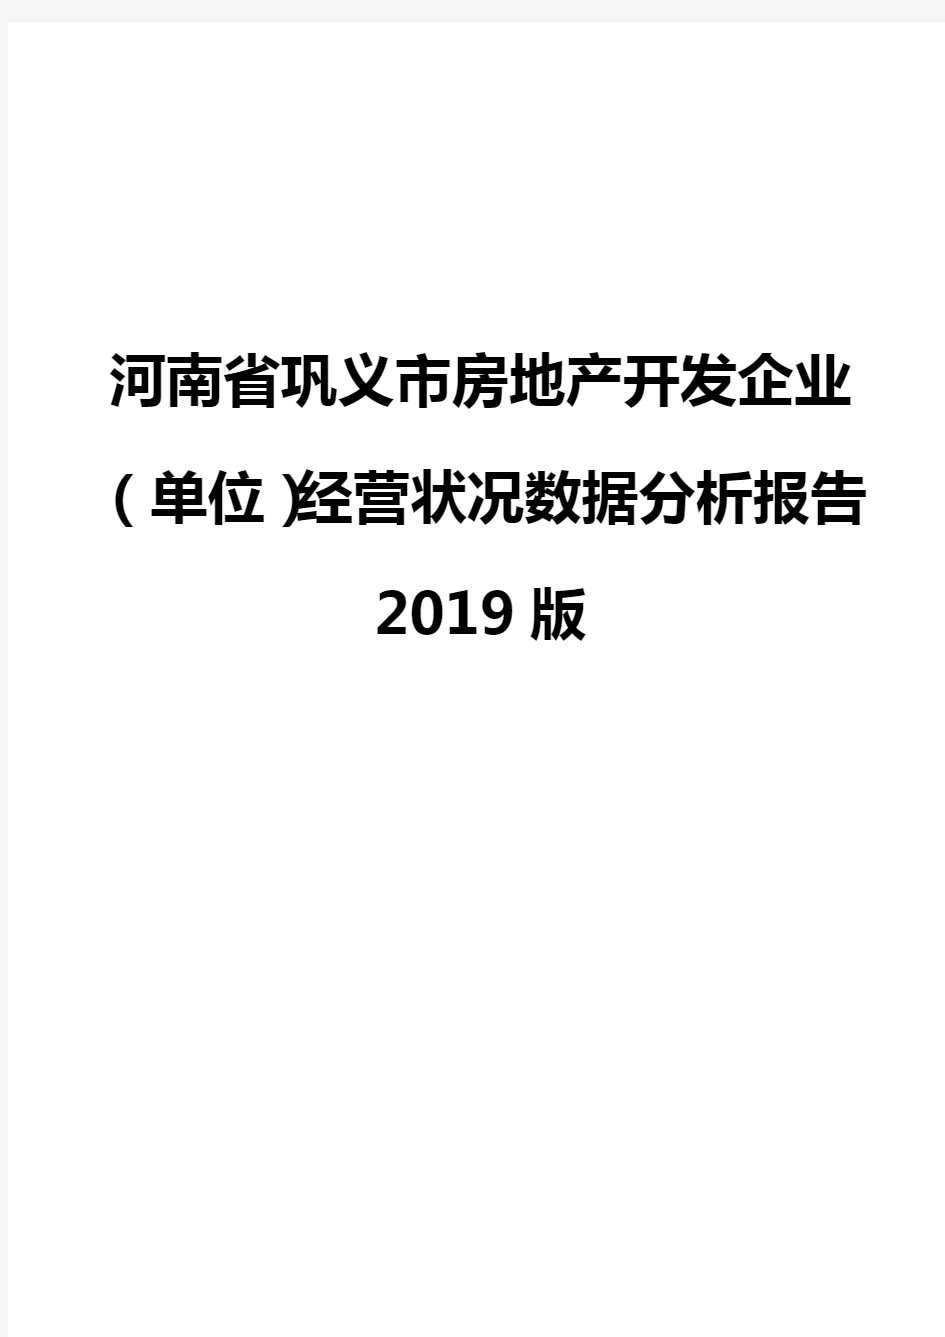 河南省巩义市房地产开发企业(单位)经营状况数据分析报告2019版